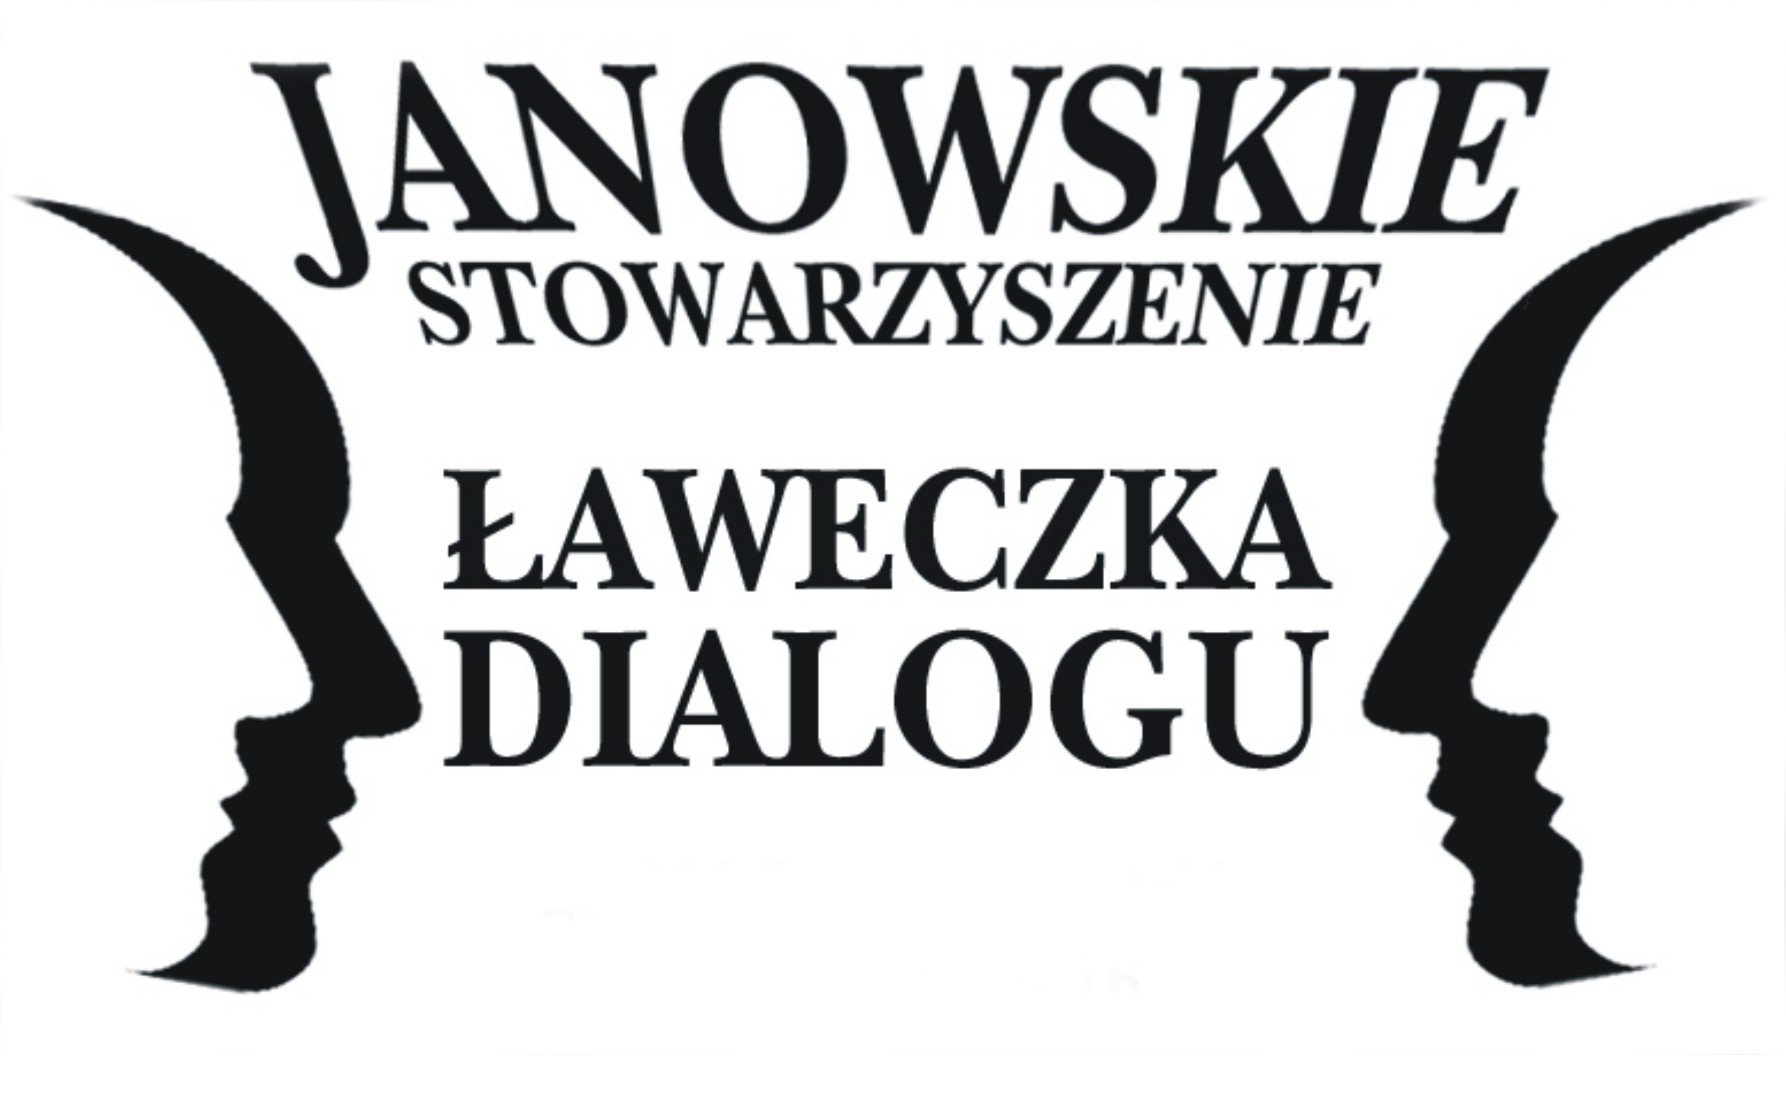 Ławeczka Dialogu Association in Janów